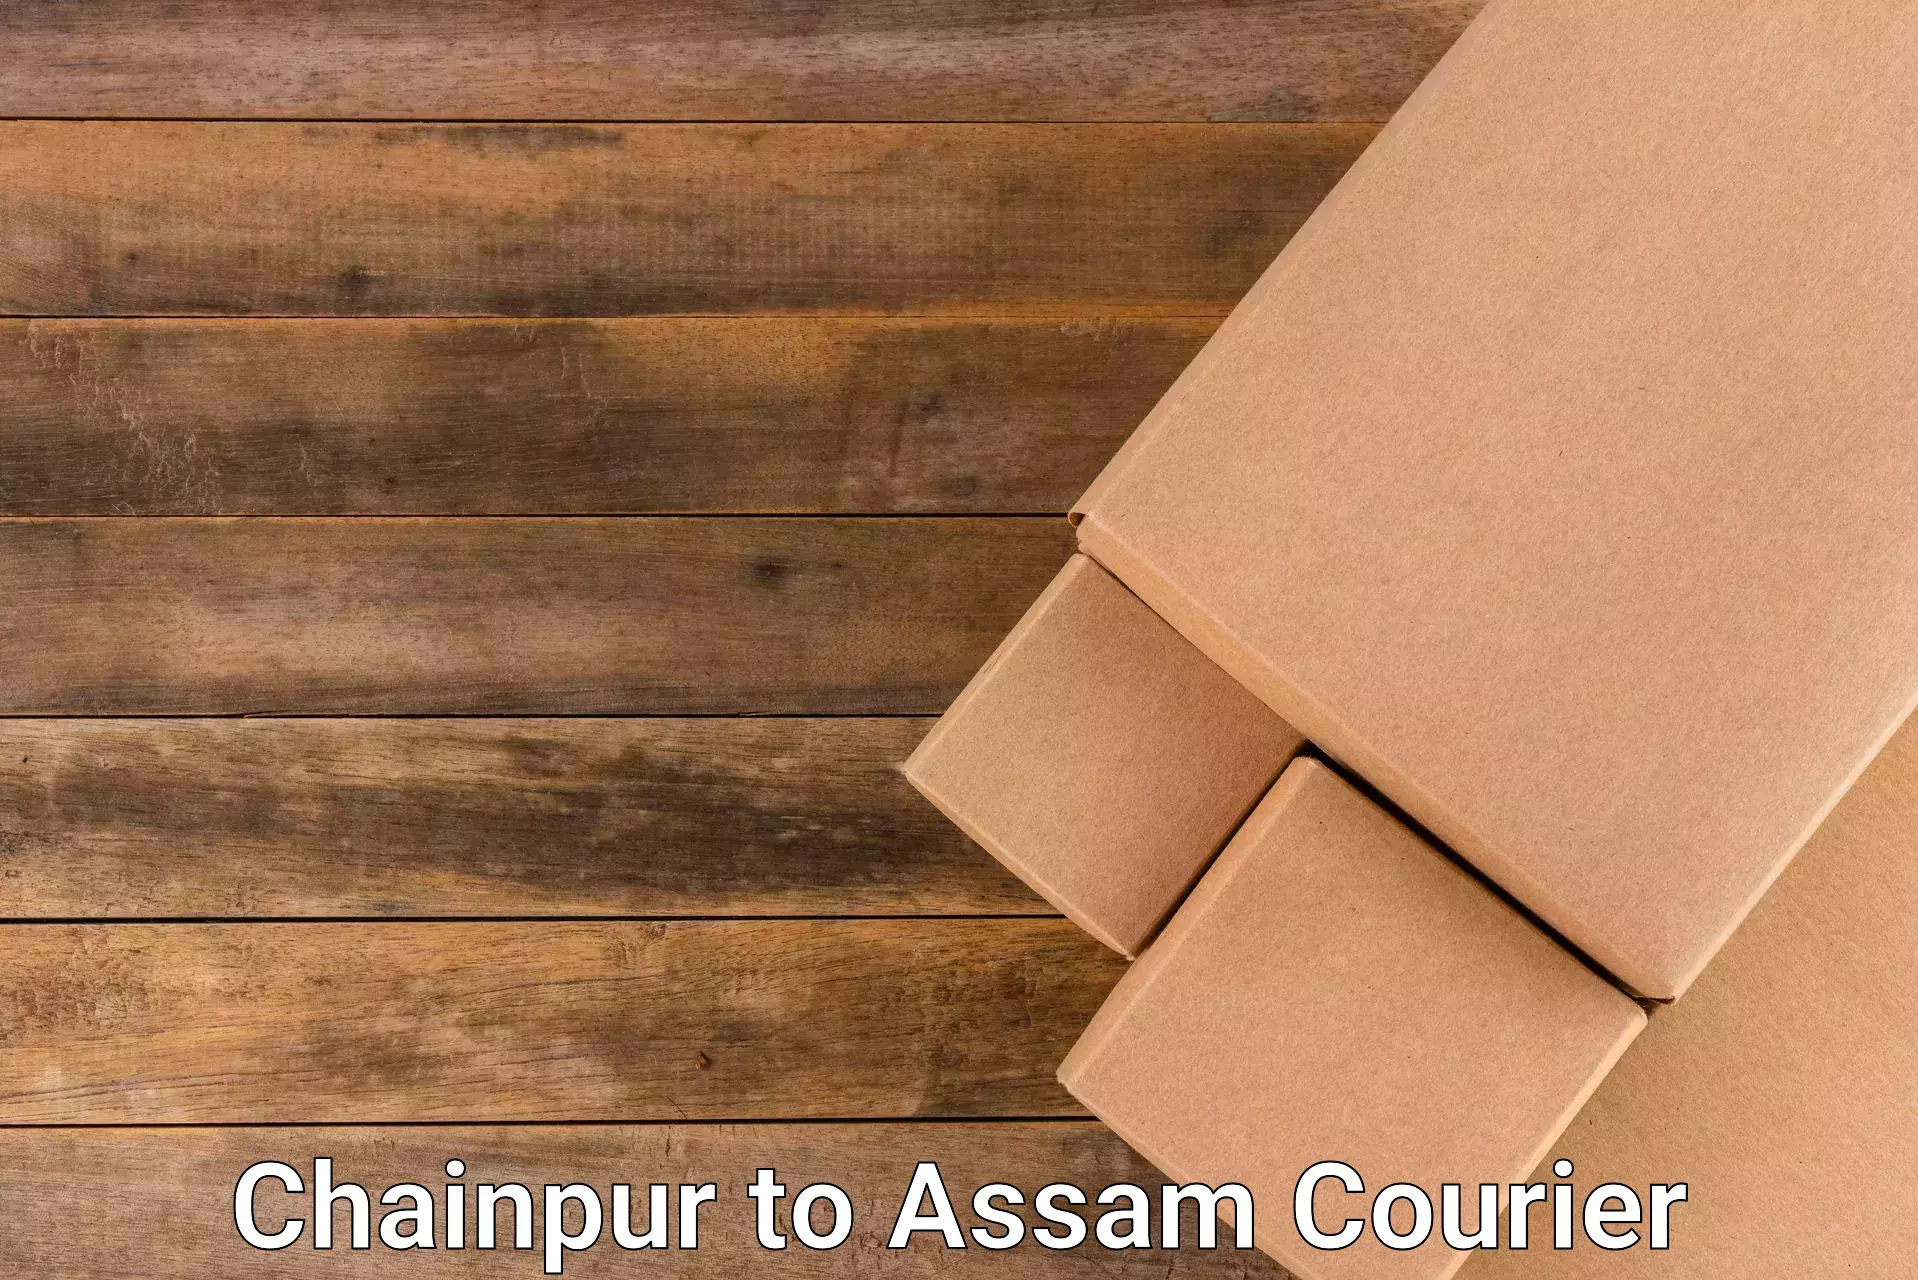 Digital courier platforms Chainpur to Manikpur Bongaigaon